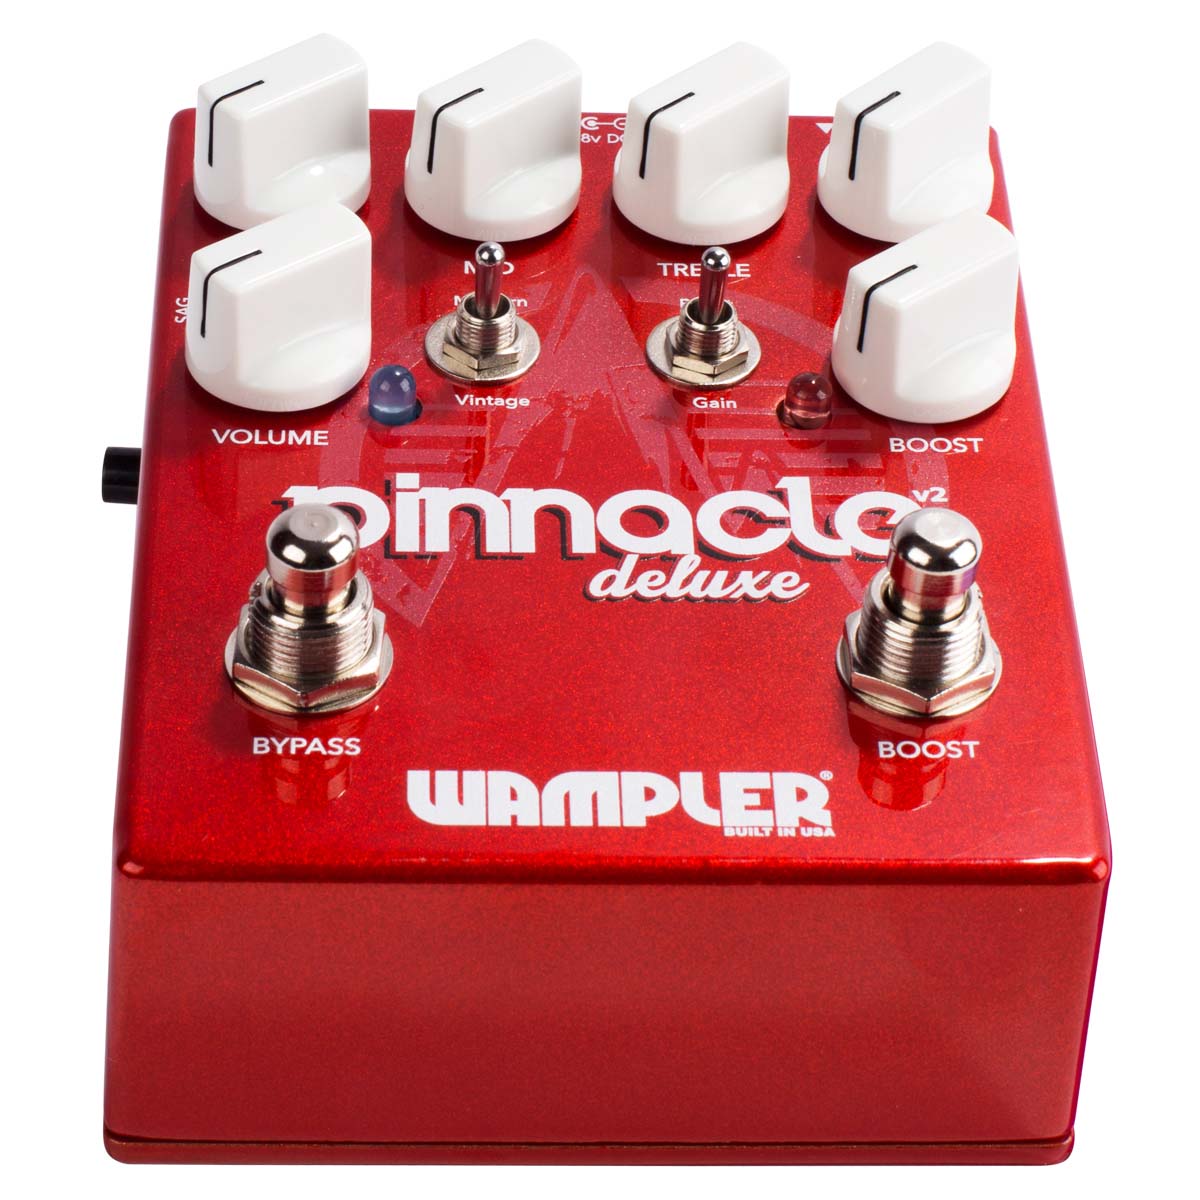 Wampler - Pinnacle Deluxe v2